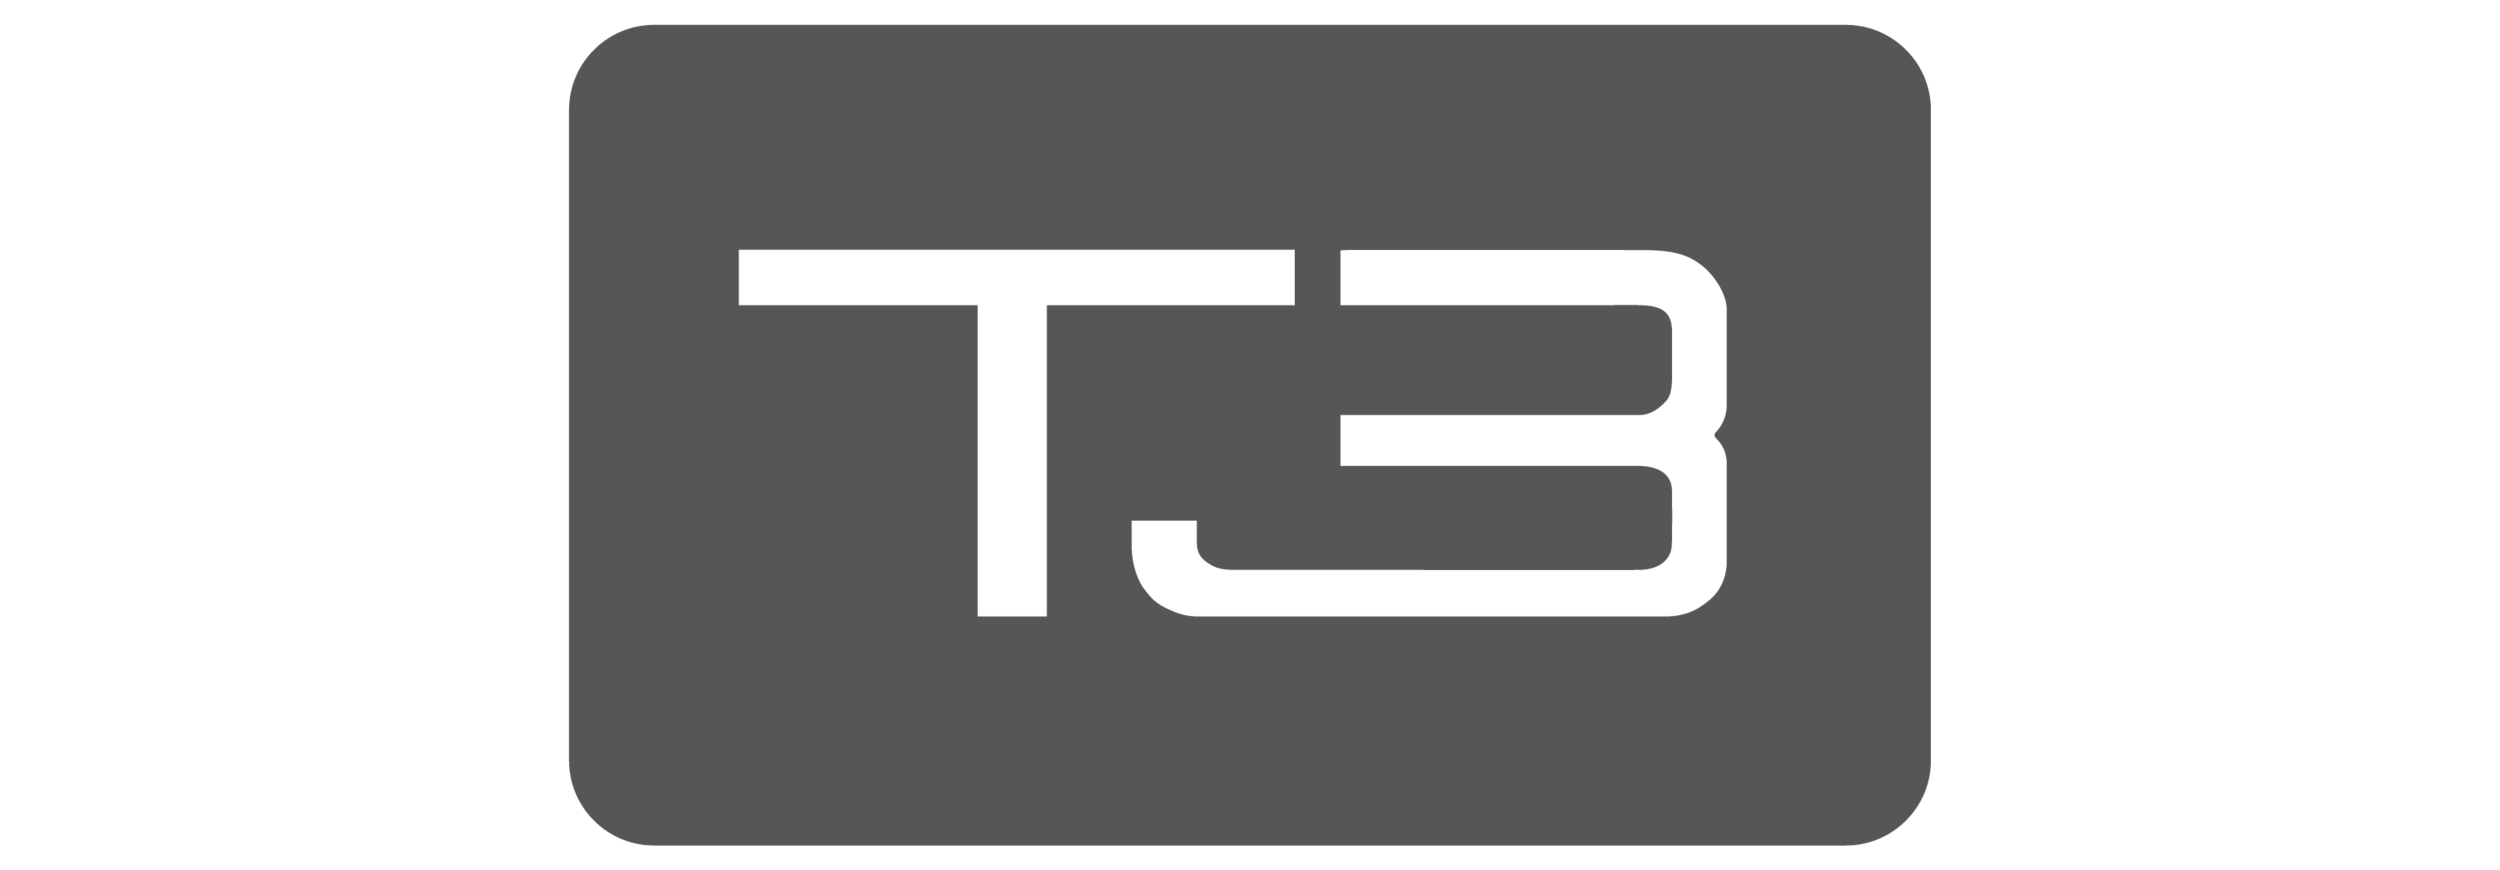 T3 Logo.png